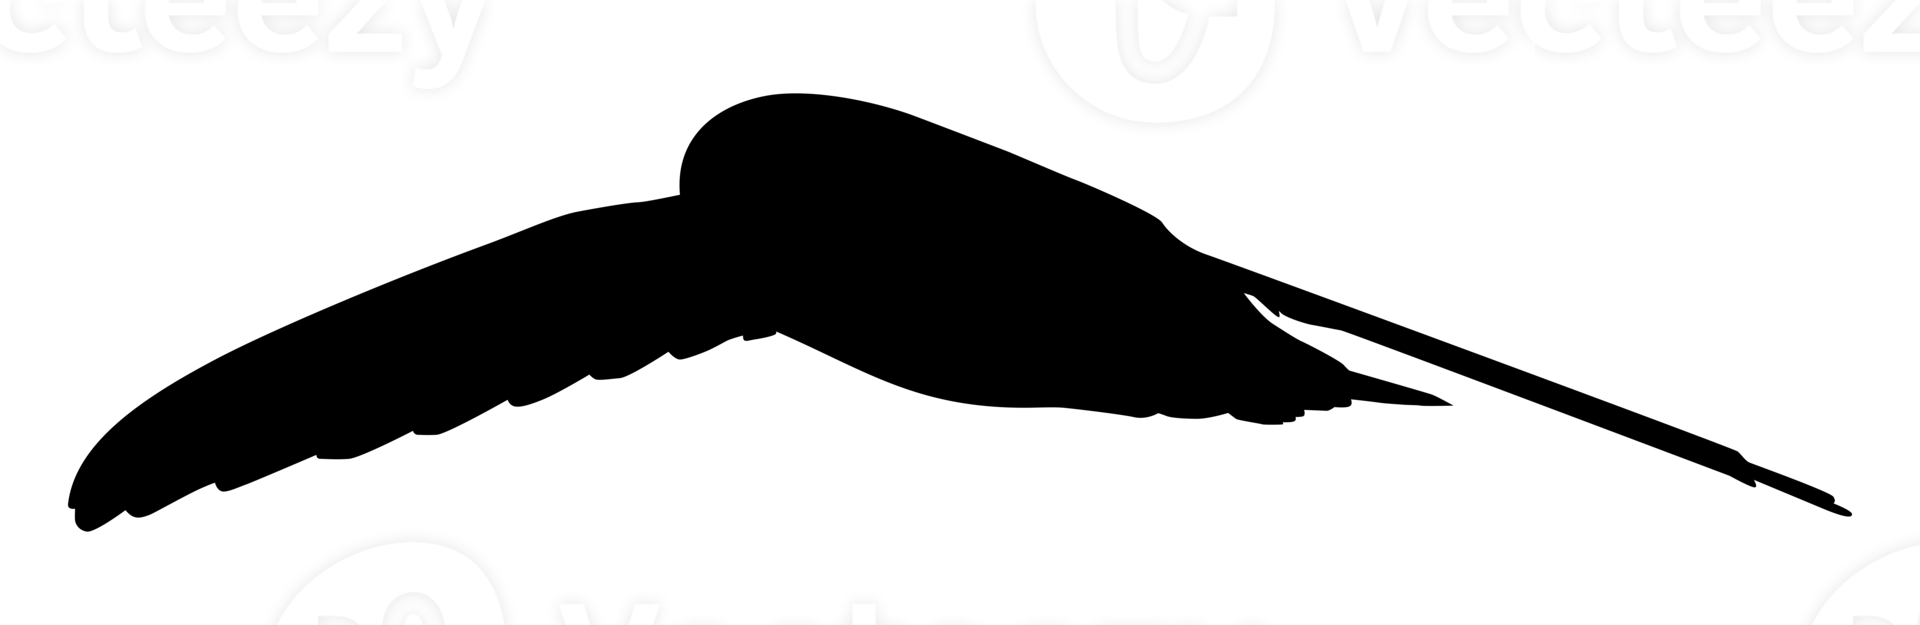 fliegende Schwalbenvogelsilhouette für Logo, Piktogramm, Website. Kunstillustration oder Grafikdesignelement. PNG-Format png